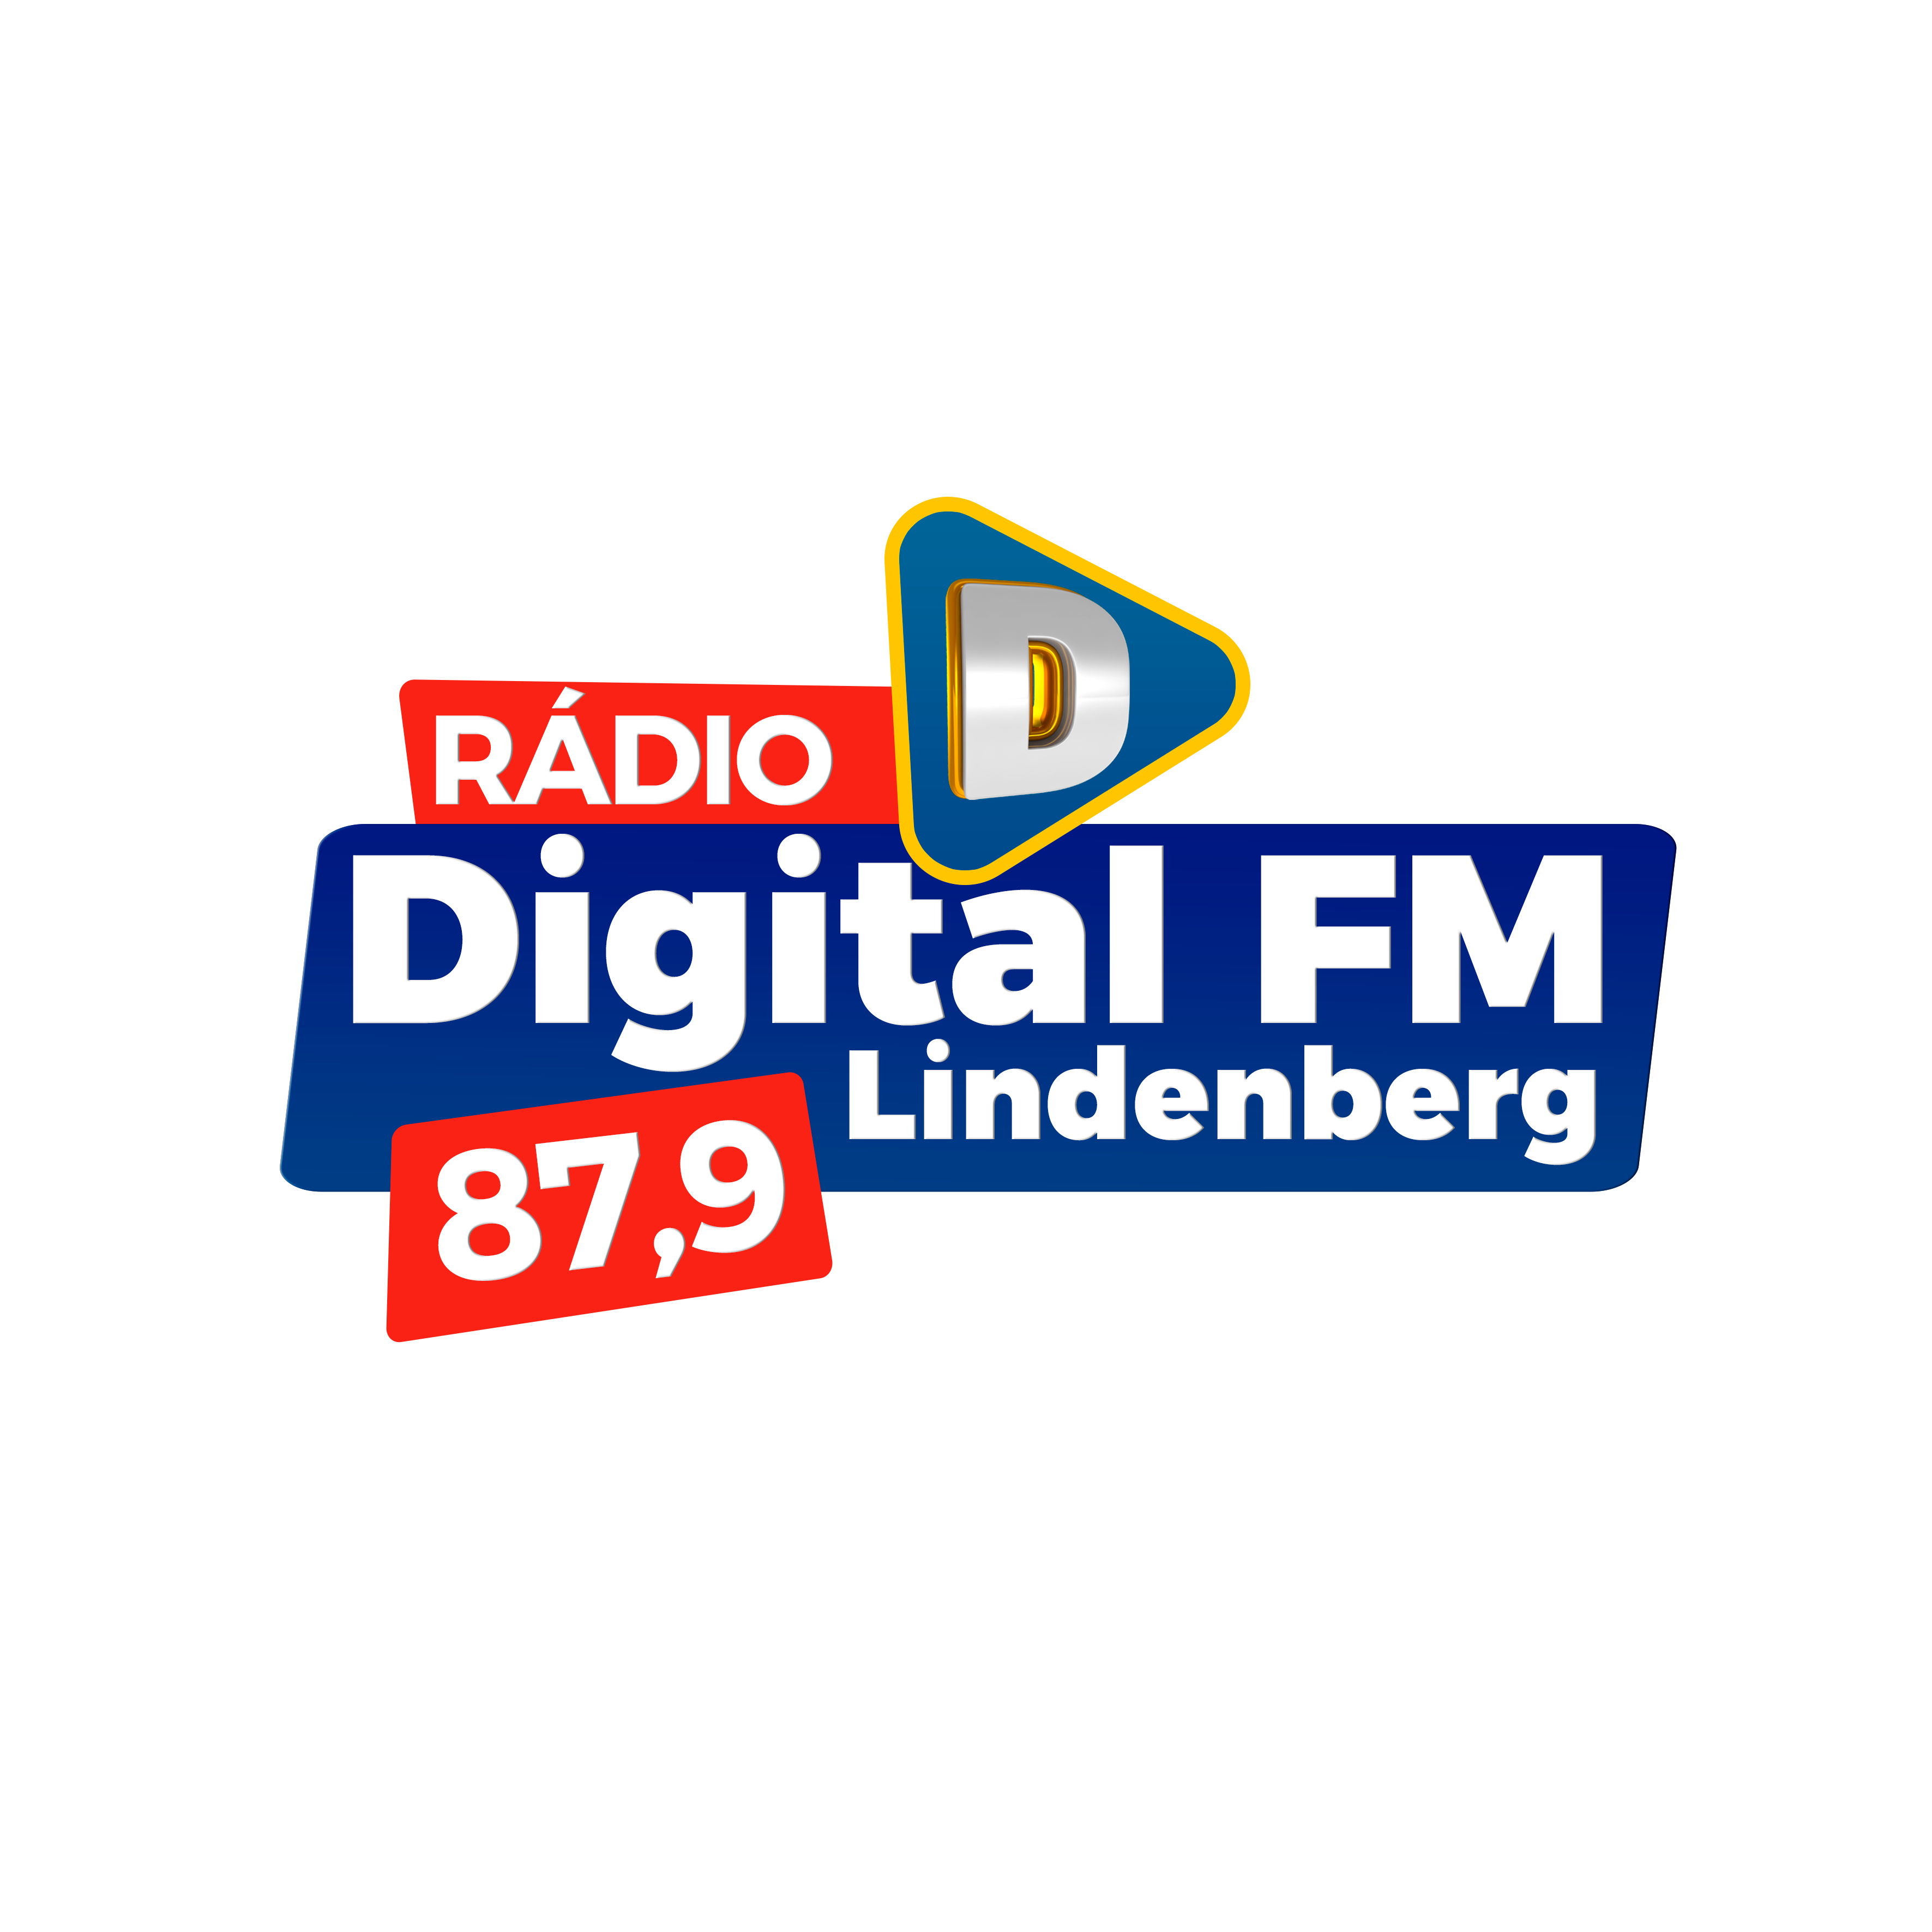  Rdio Digital FM - 87,9 MHz